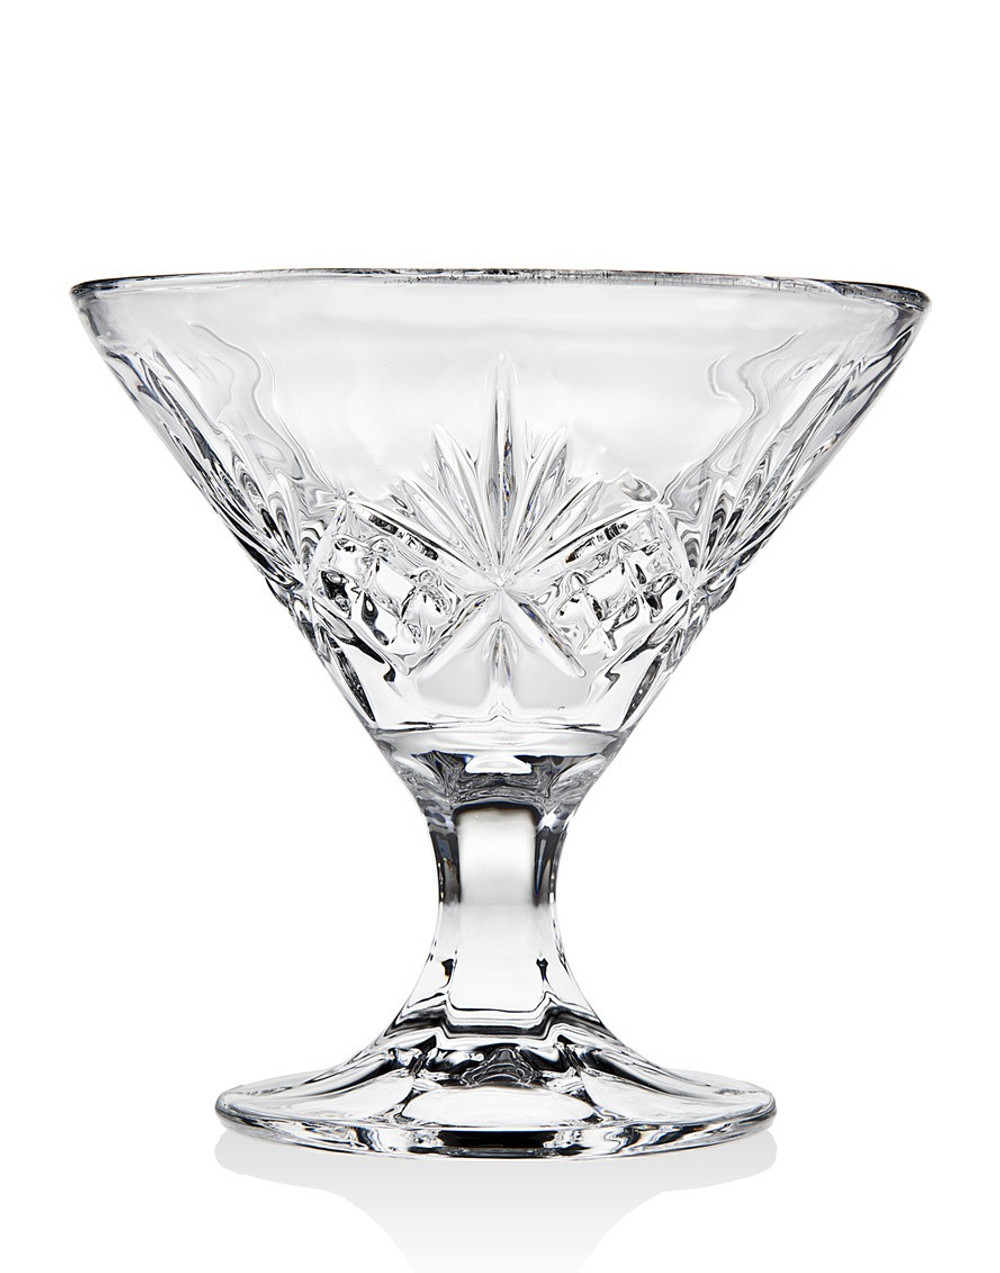 Dublin Crystal Martini Shaker – Godinger